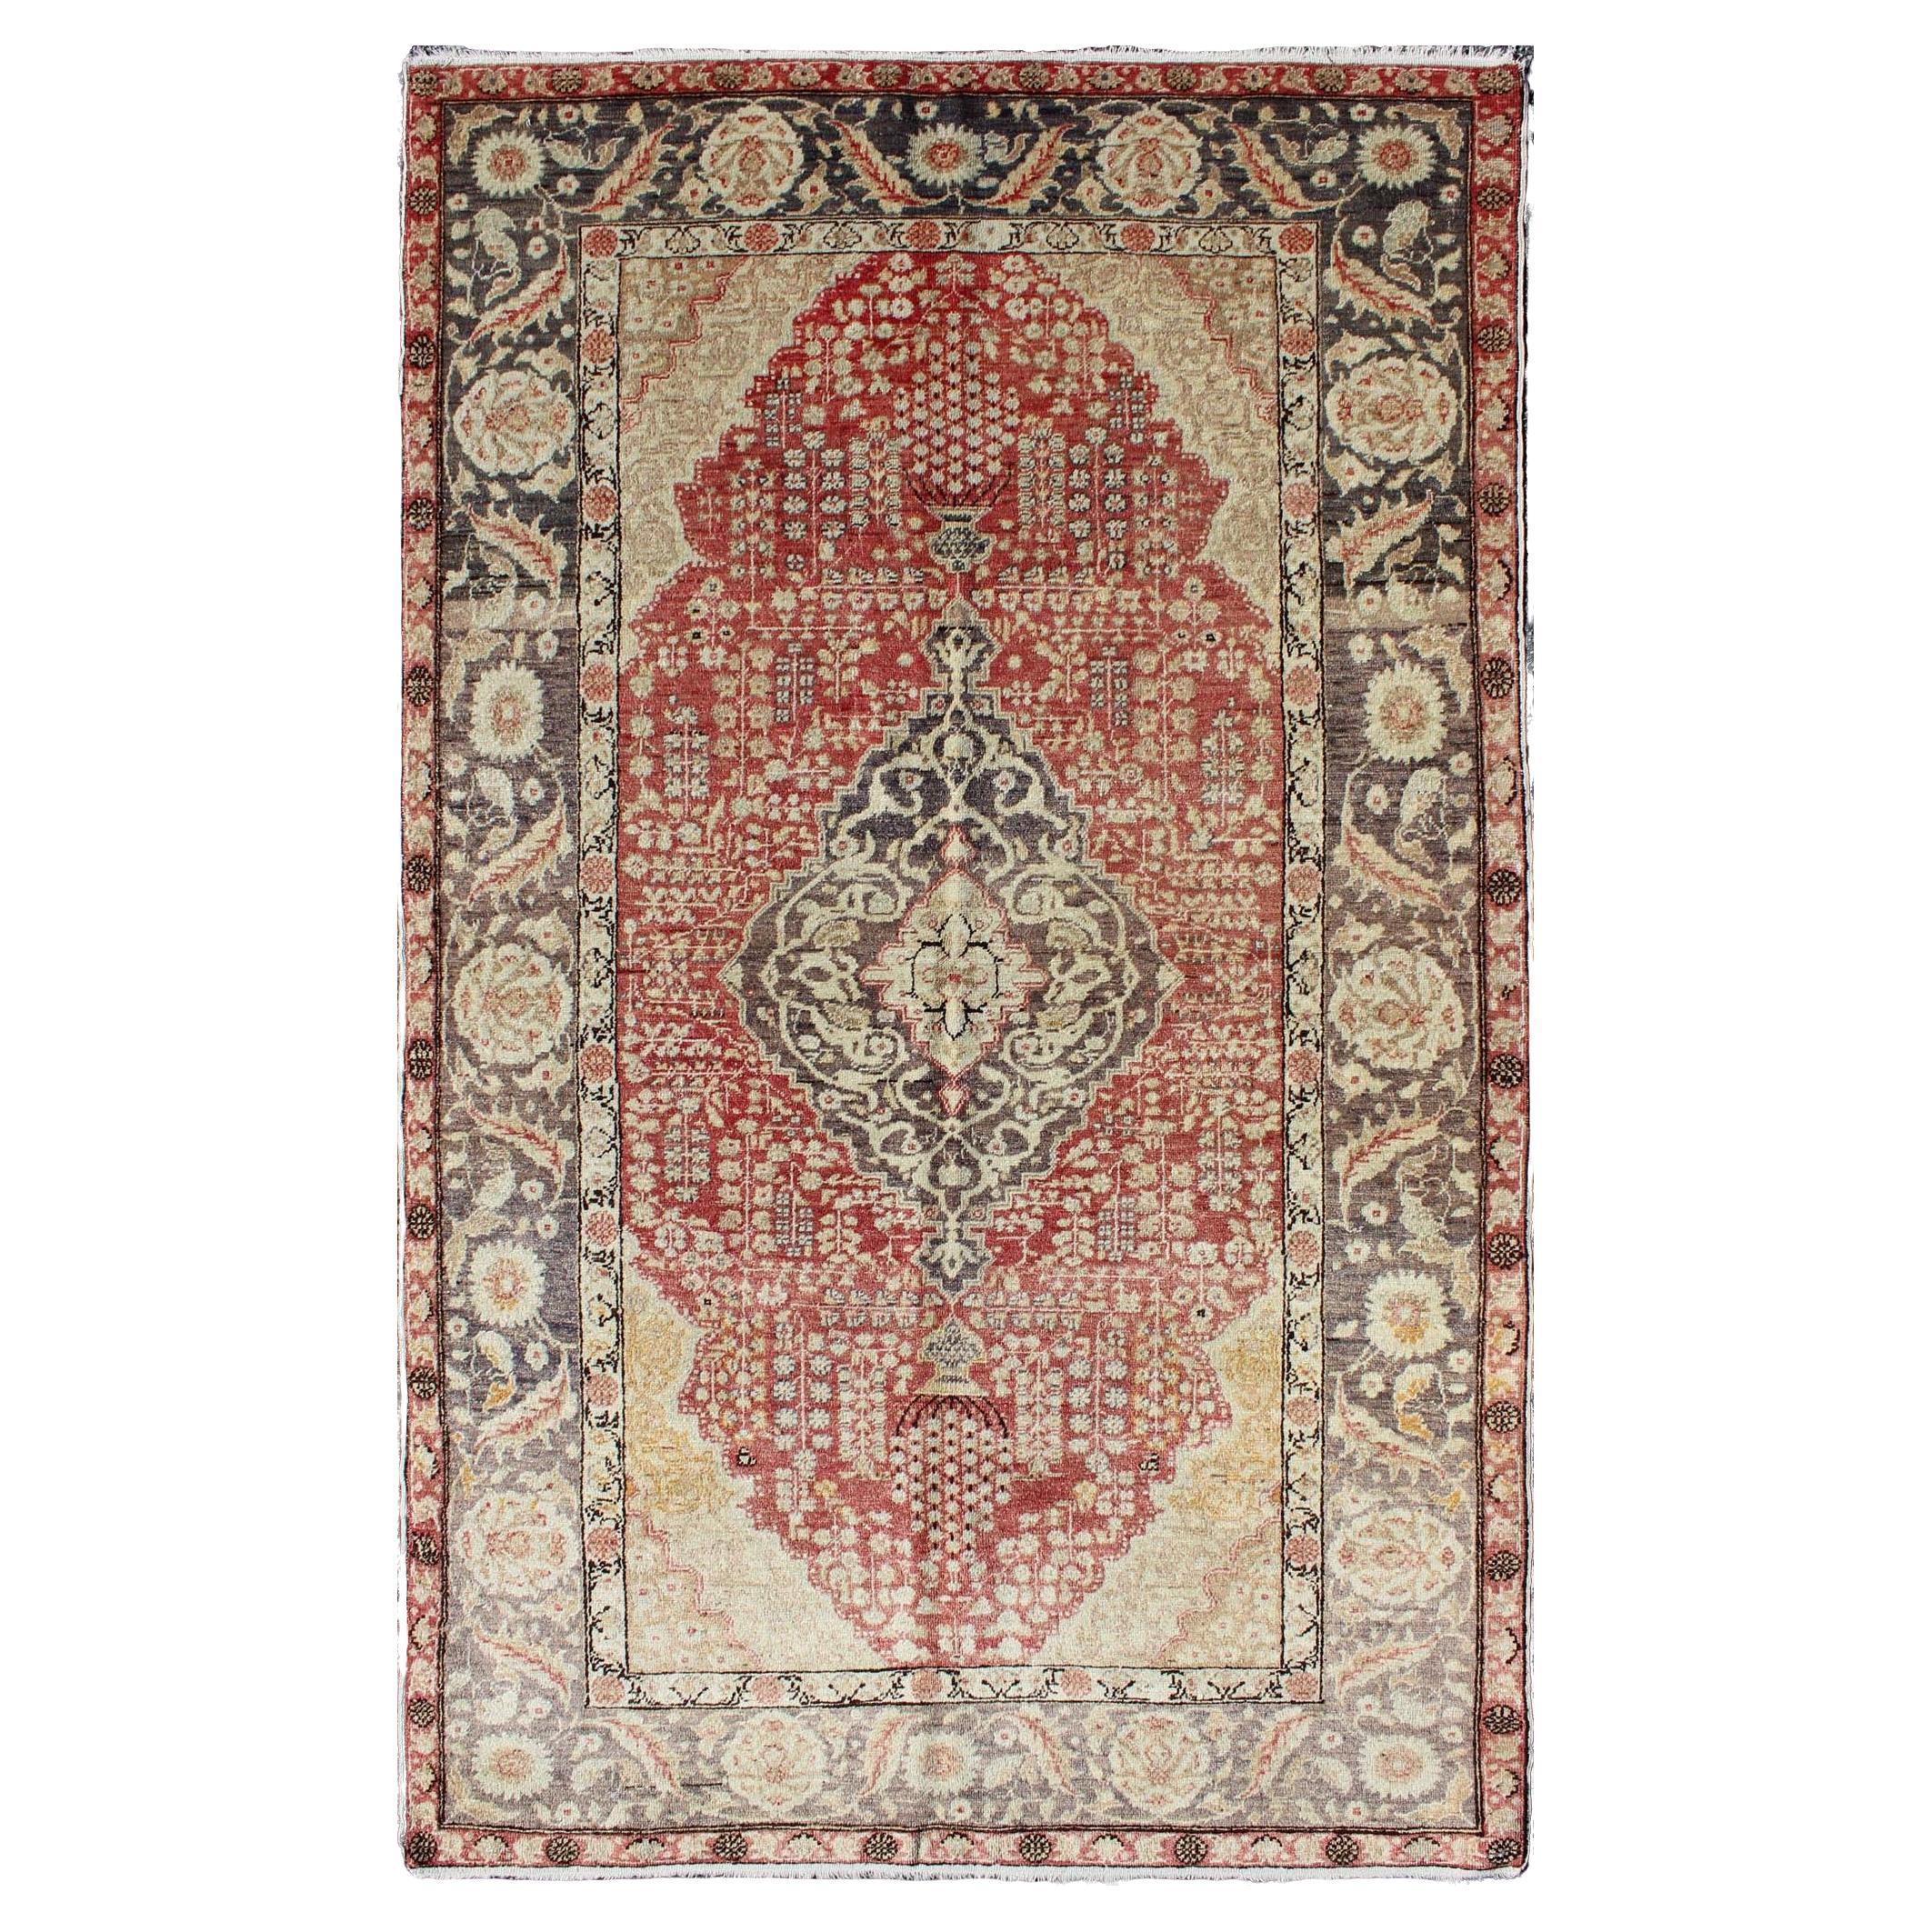 Antiker türkischer Oushak-Teppich mit floralem Medaillonmuster in Rot und Anthrazit